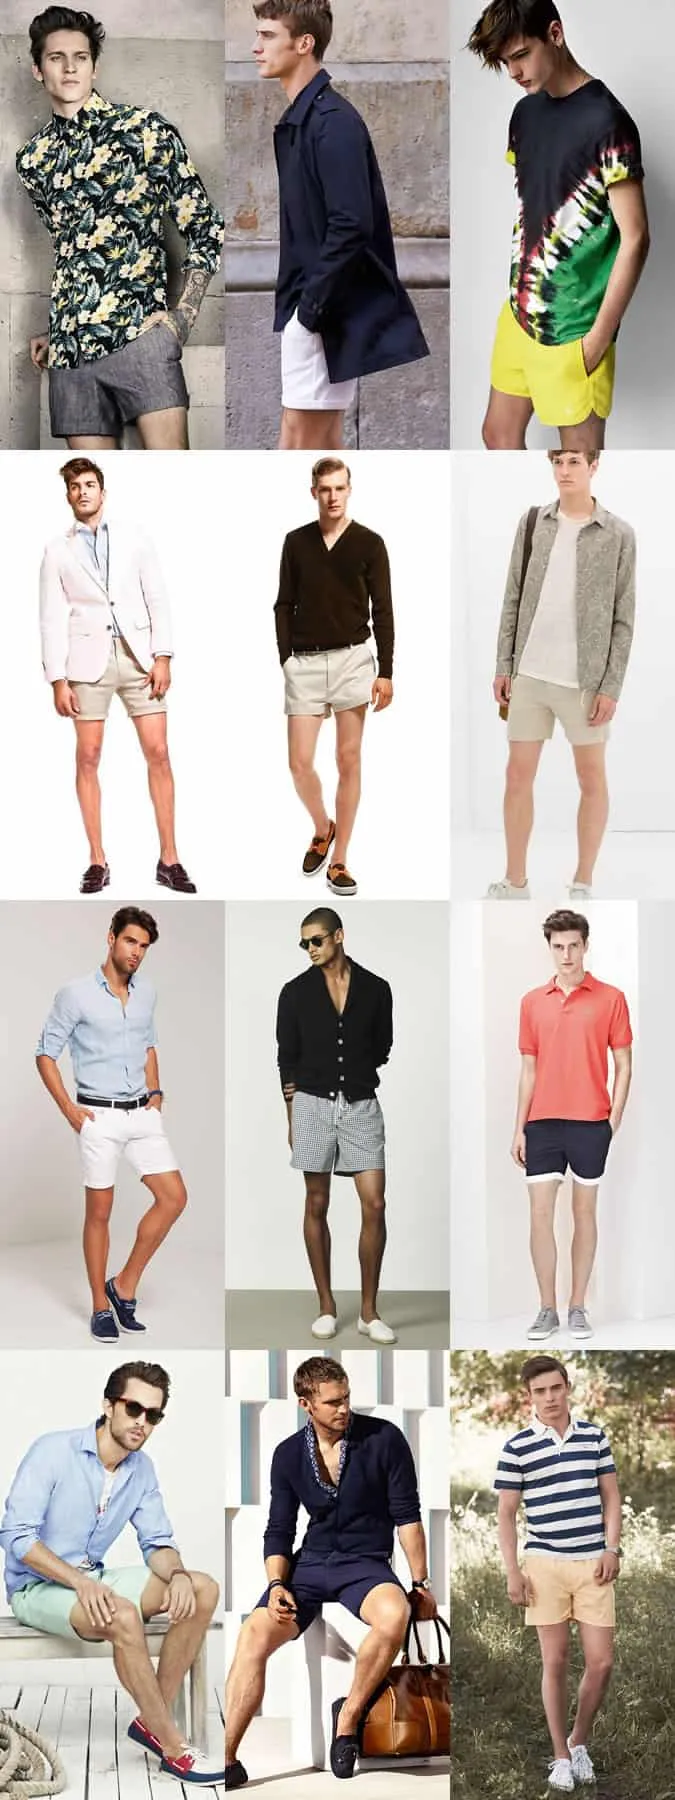 Quần short ngắn dành cho nam giới tìm cảm hứng cho trang phục